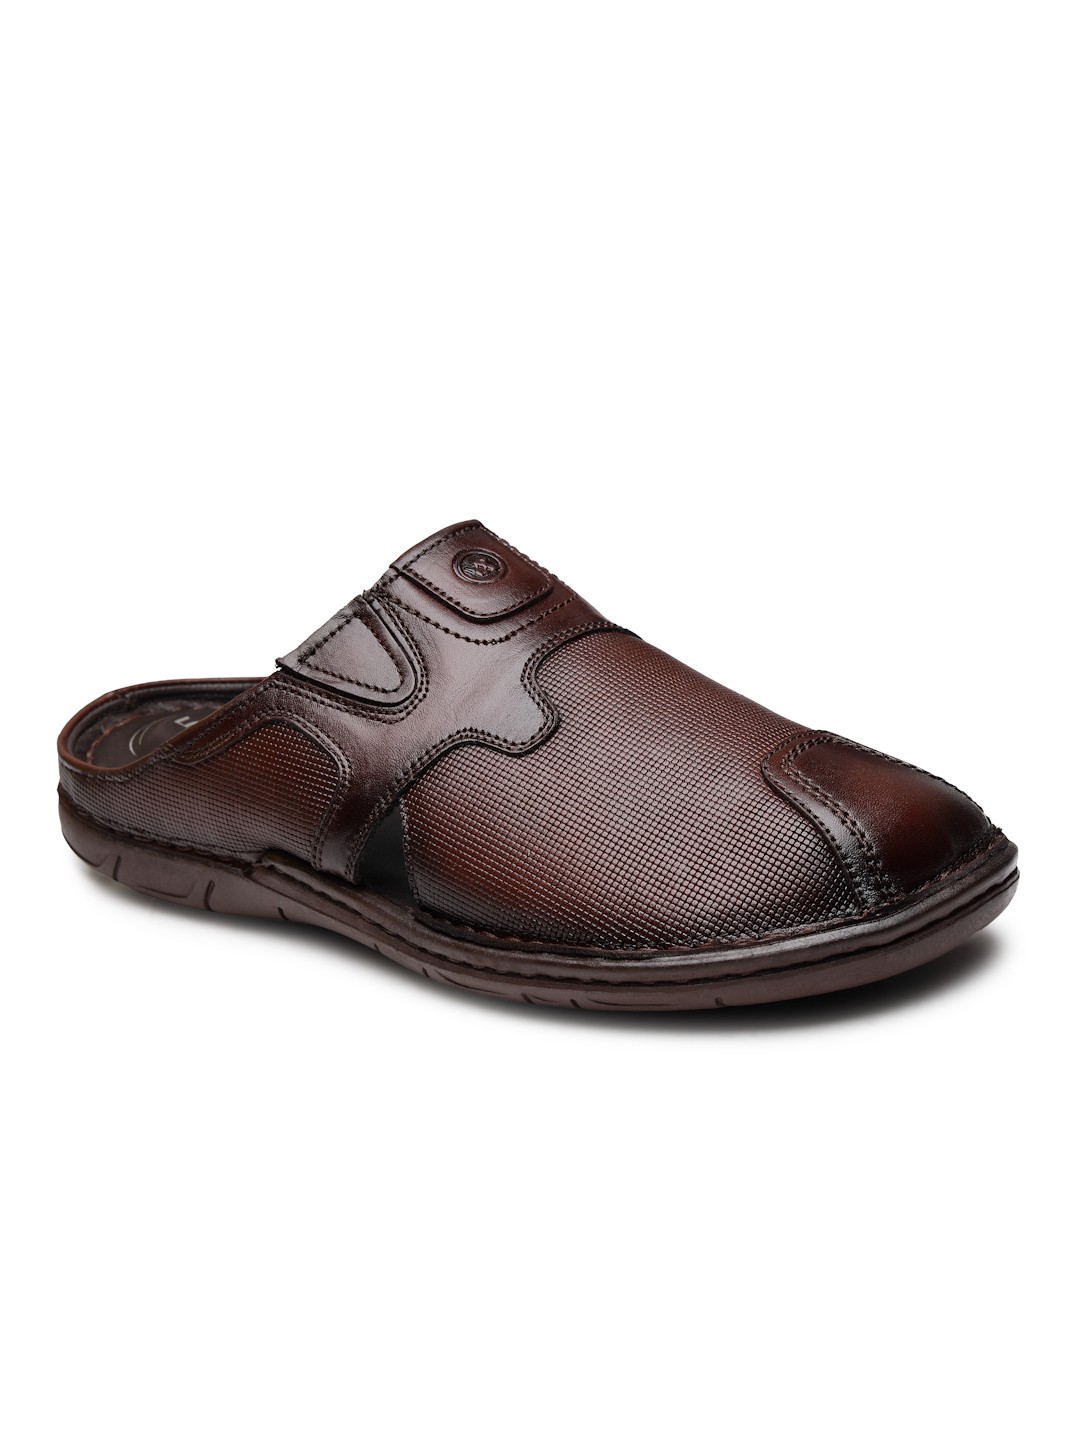 Buy Von Wellx Germany Comfort Men's Brown Slippers Arlo Online in Galle